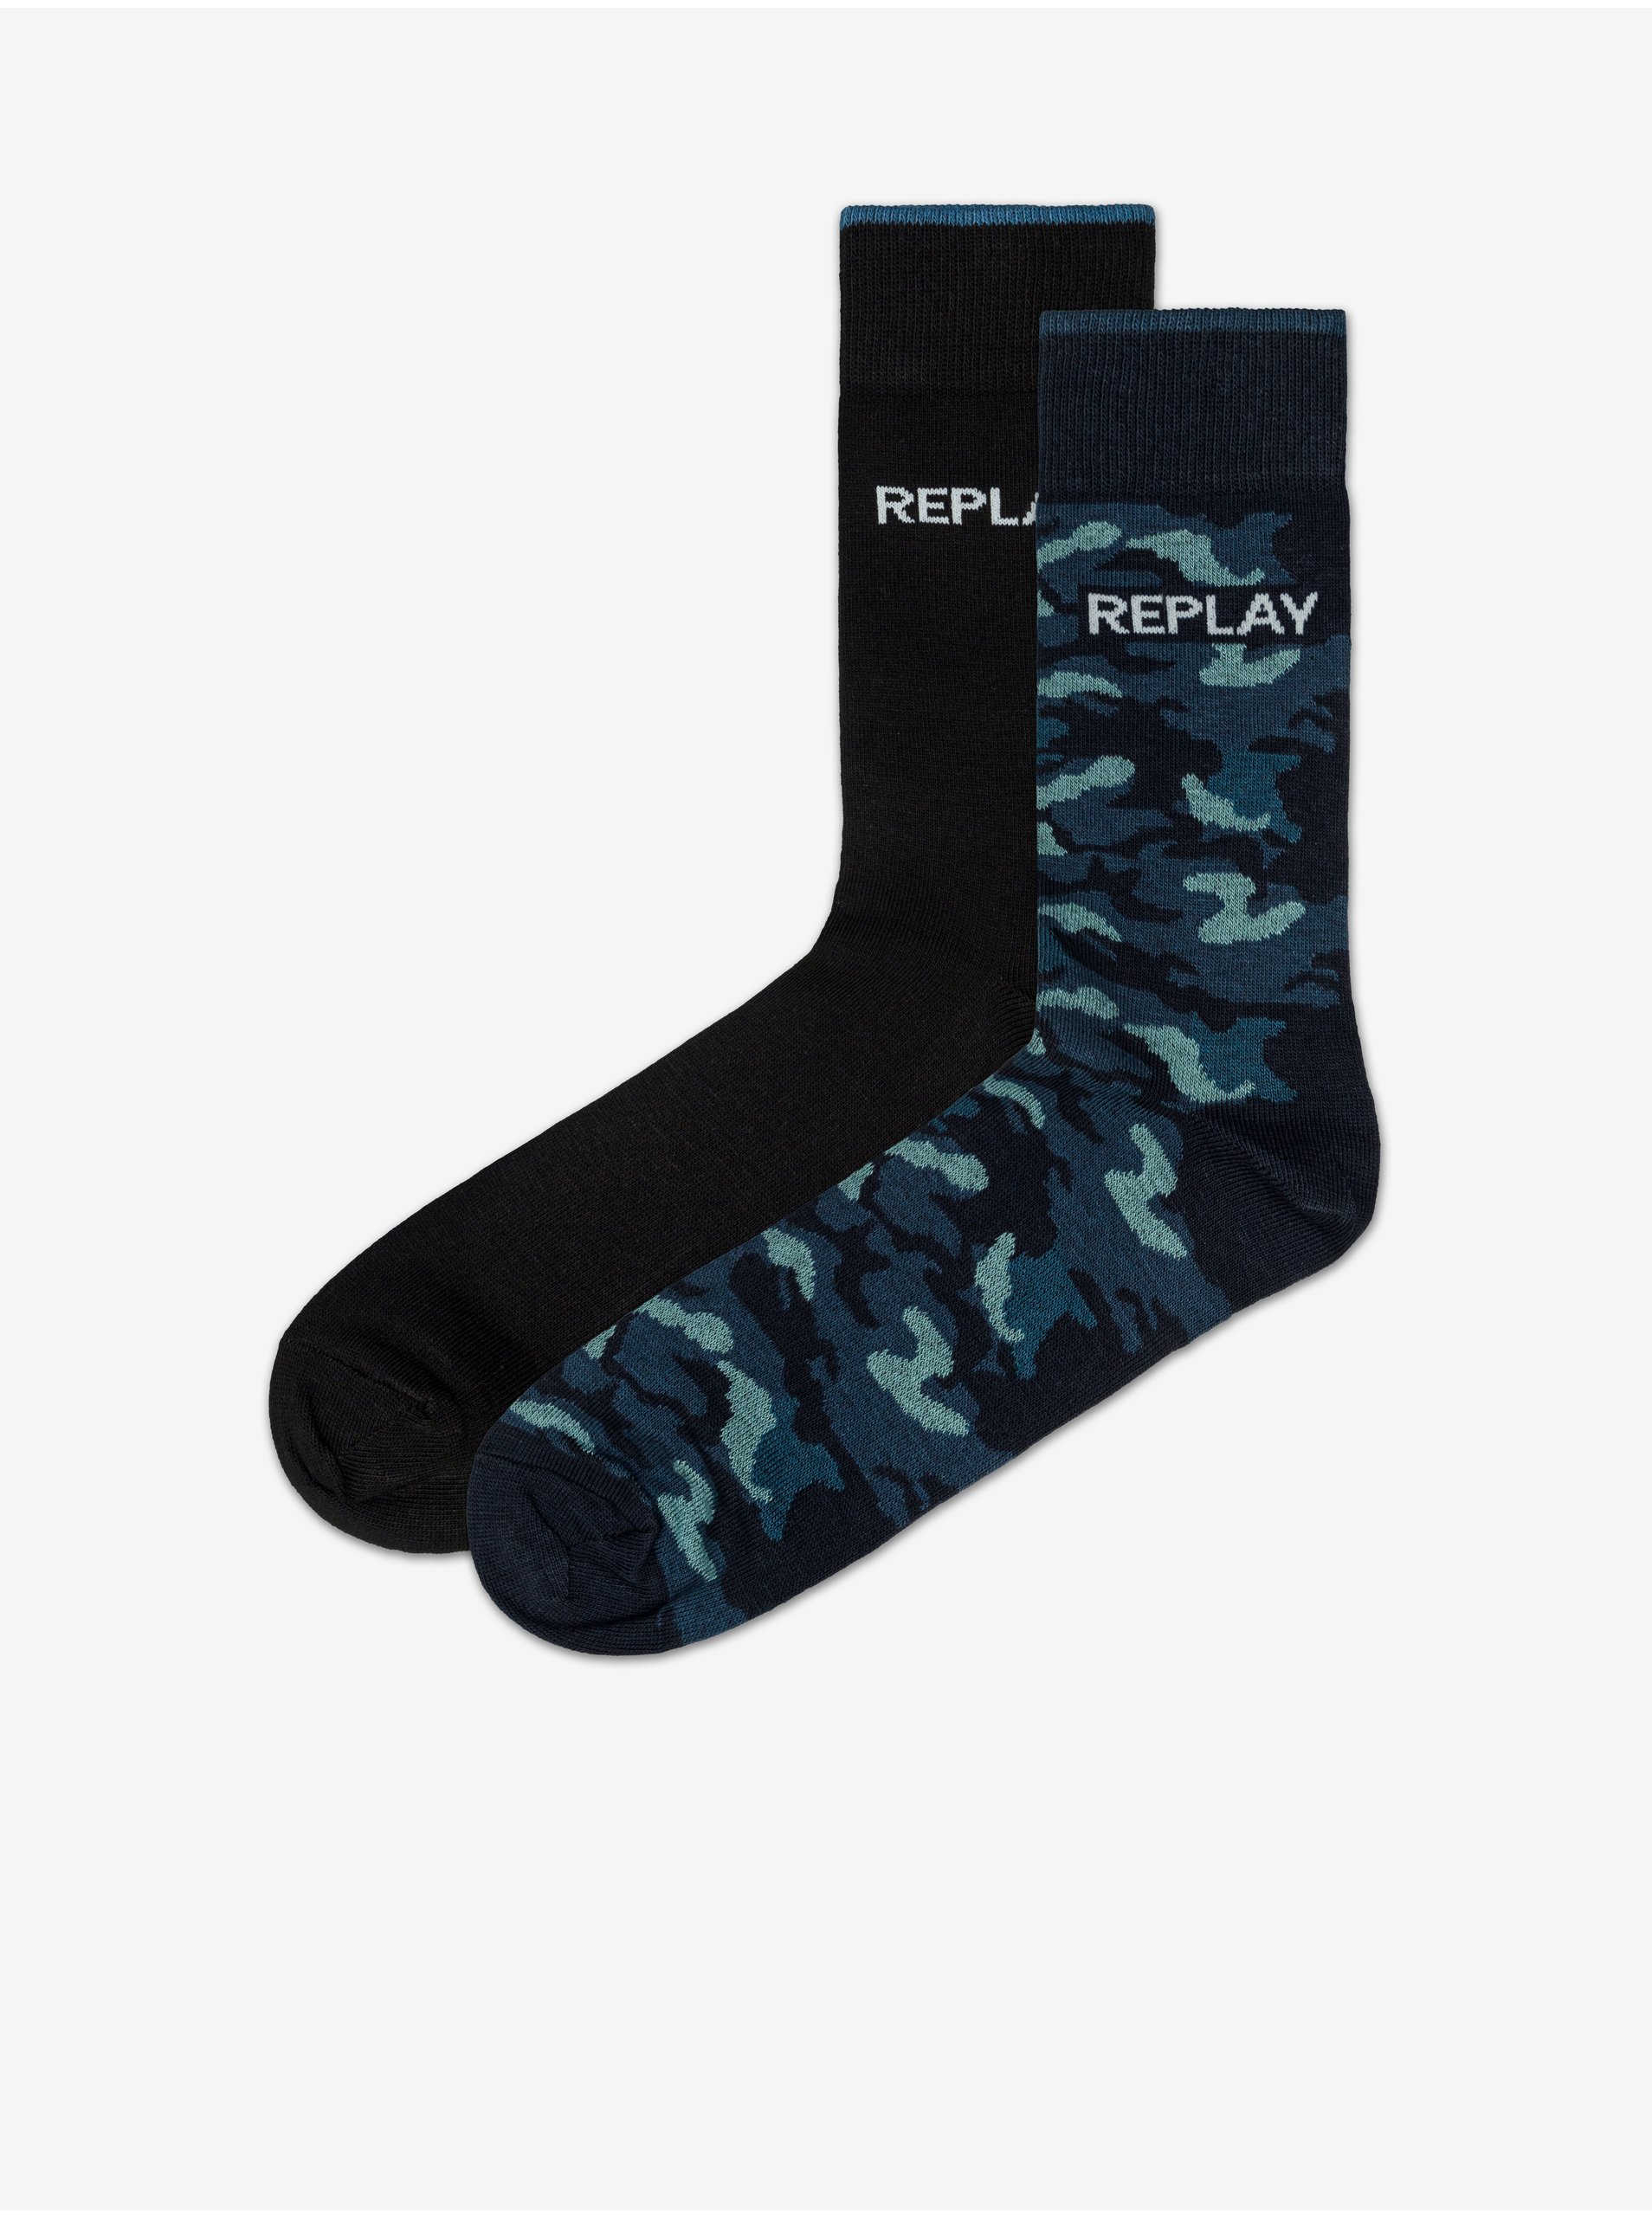 Levně Sada dvou párů vzorovaných ponožek v černé a modré barvě Replay Banderole